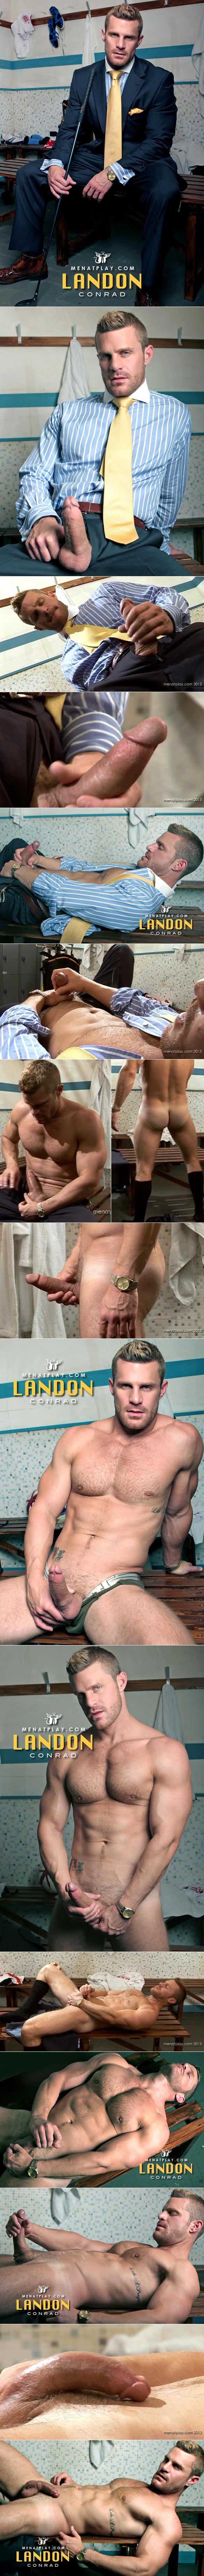 MenAtPlay: Landon Conrad's hot locker room jerk off | Fagalicious - Gay Porn  Blog